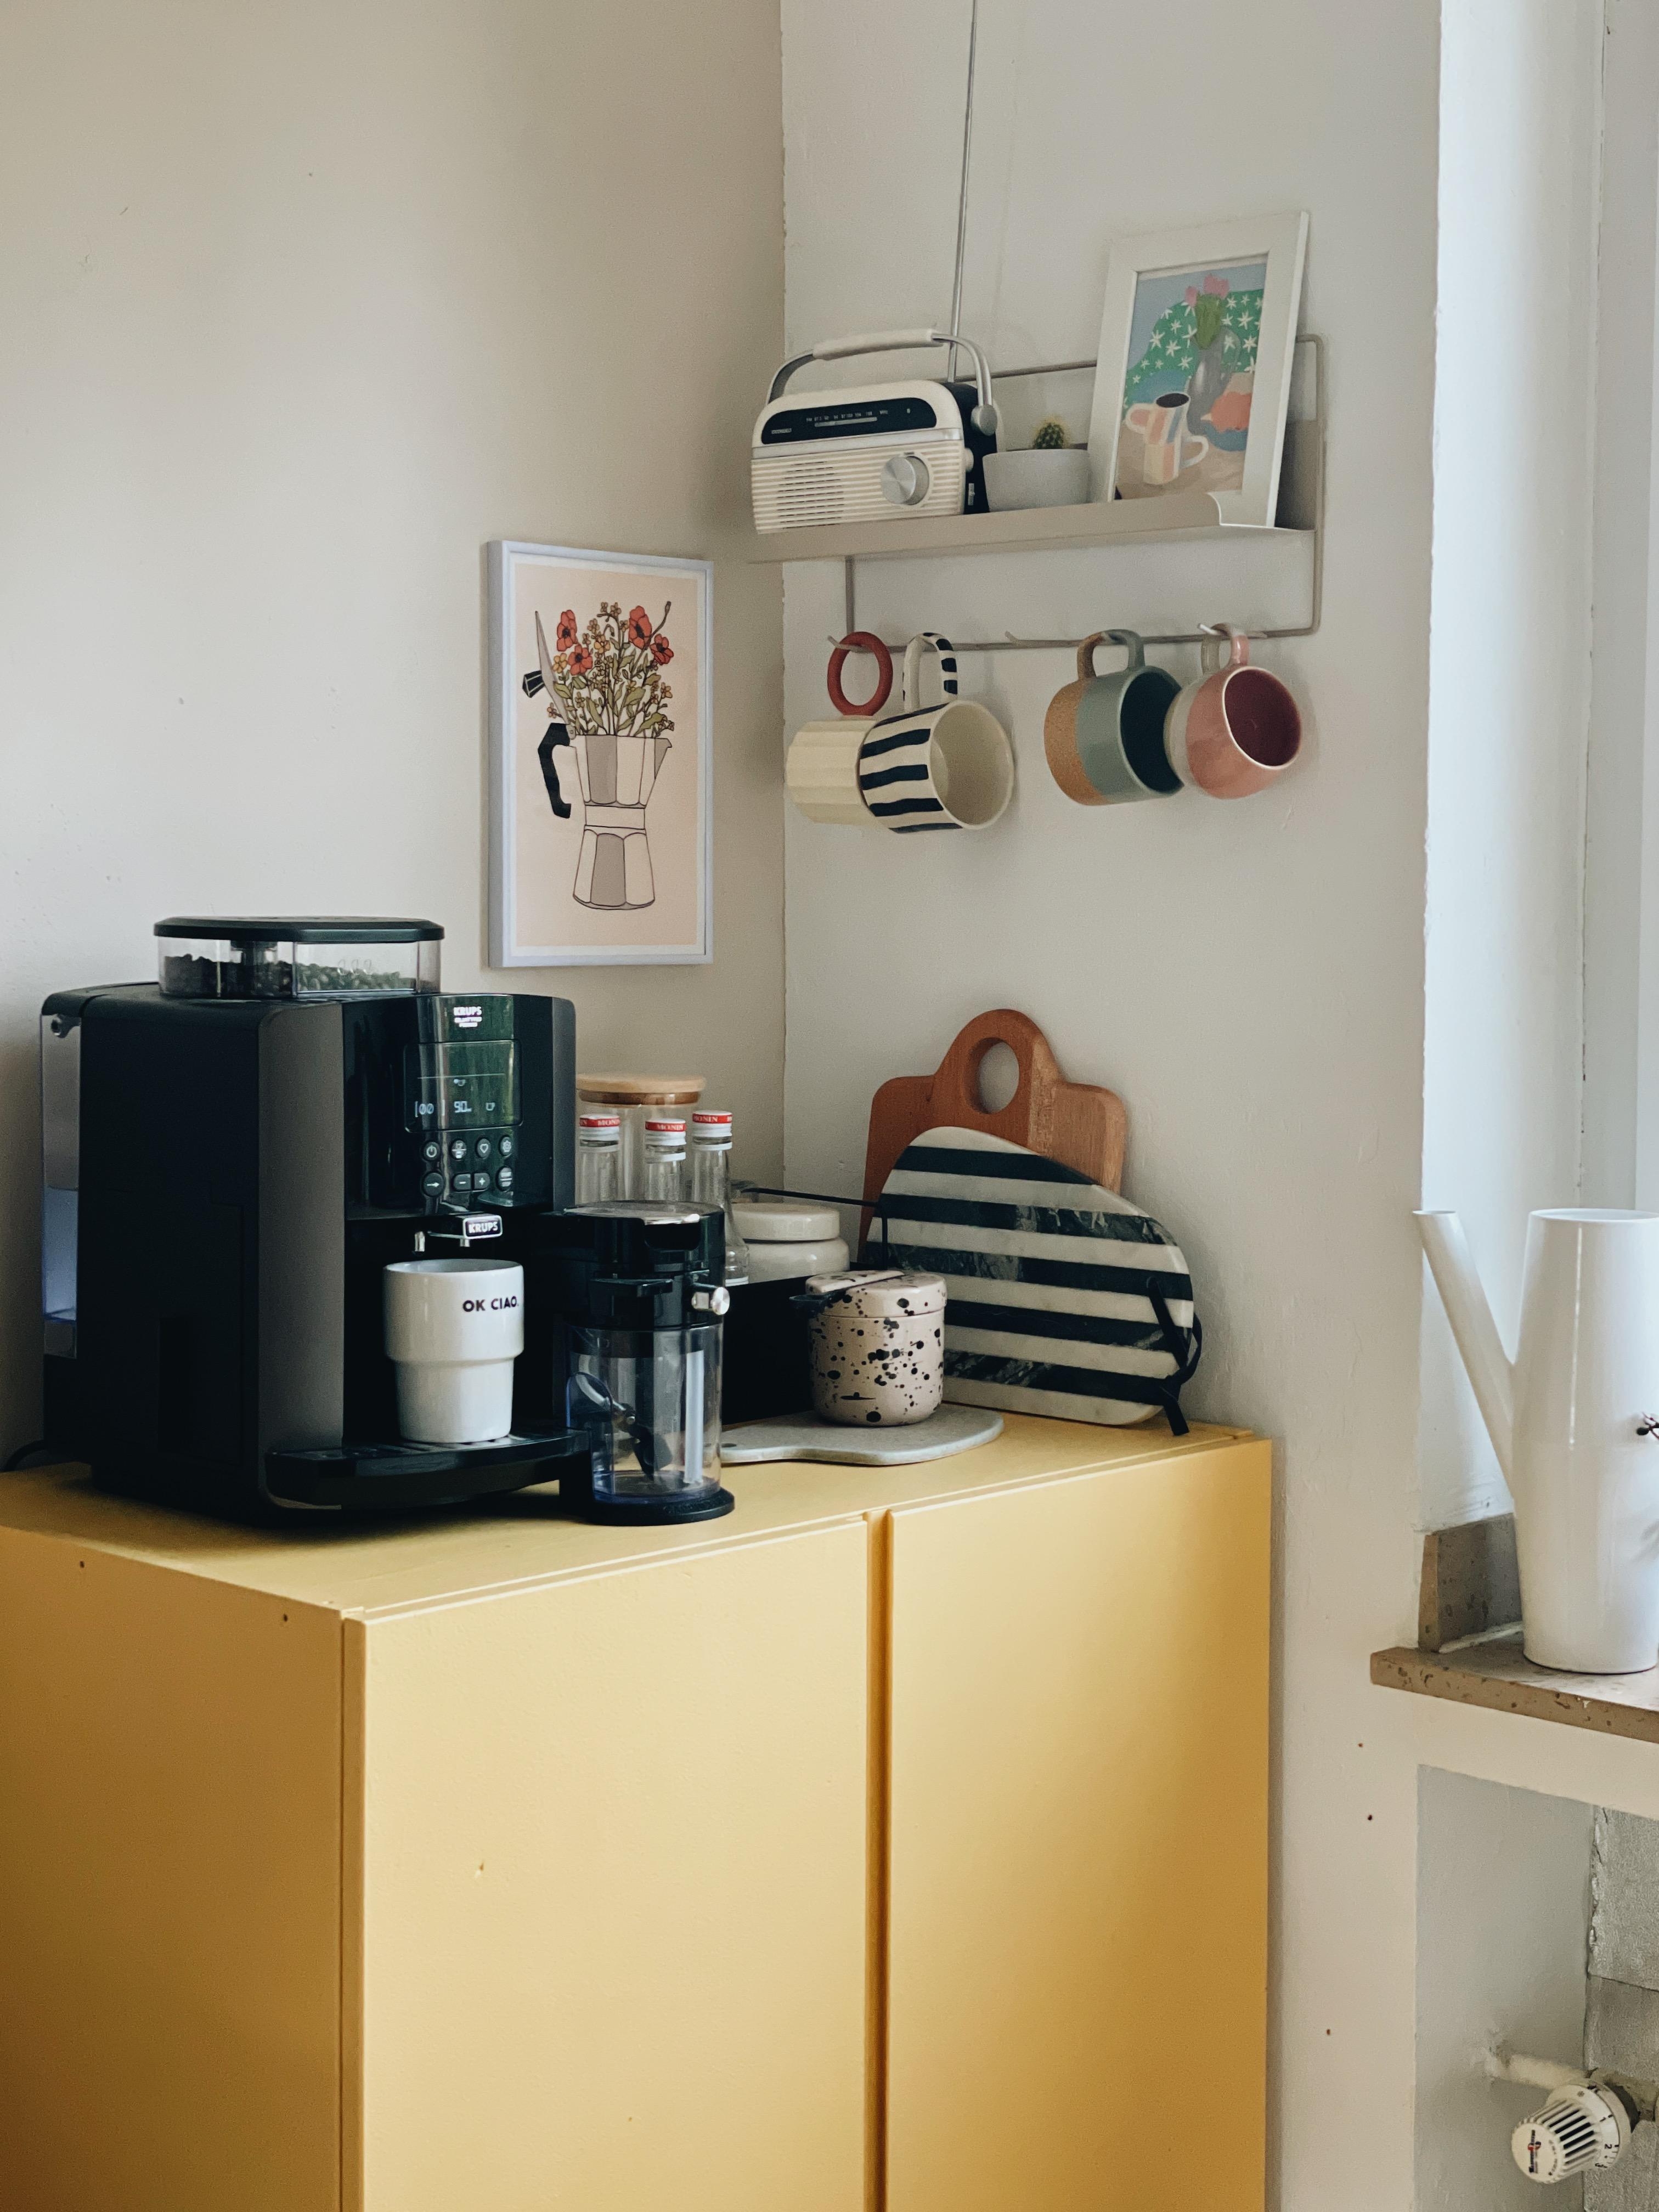 Kaffeeecke ☕️
#küche #küchensinspo #coffee #lieblingsecke #kitchen #colourful #couchliebt 